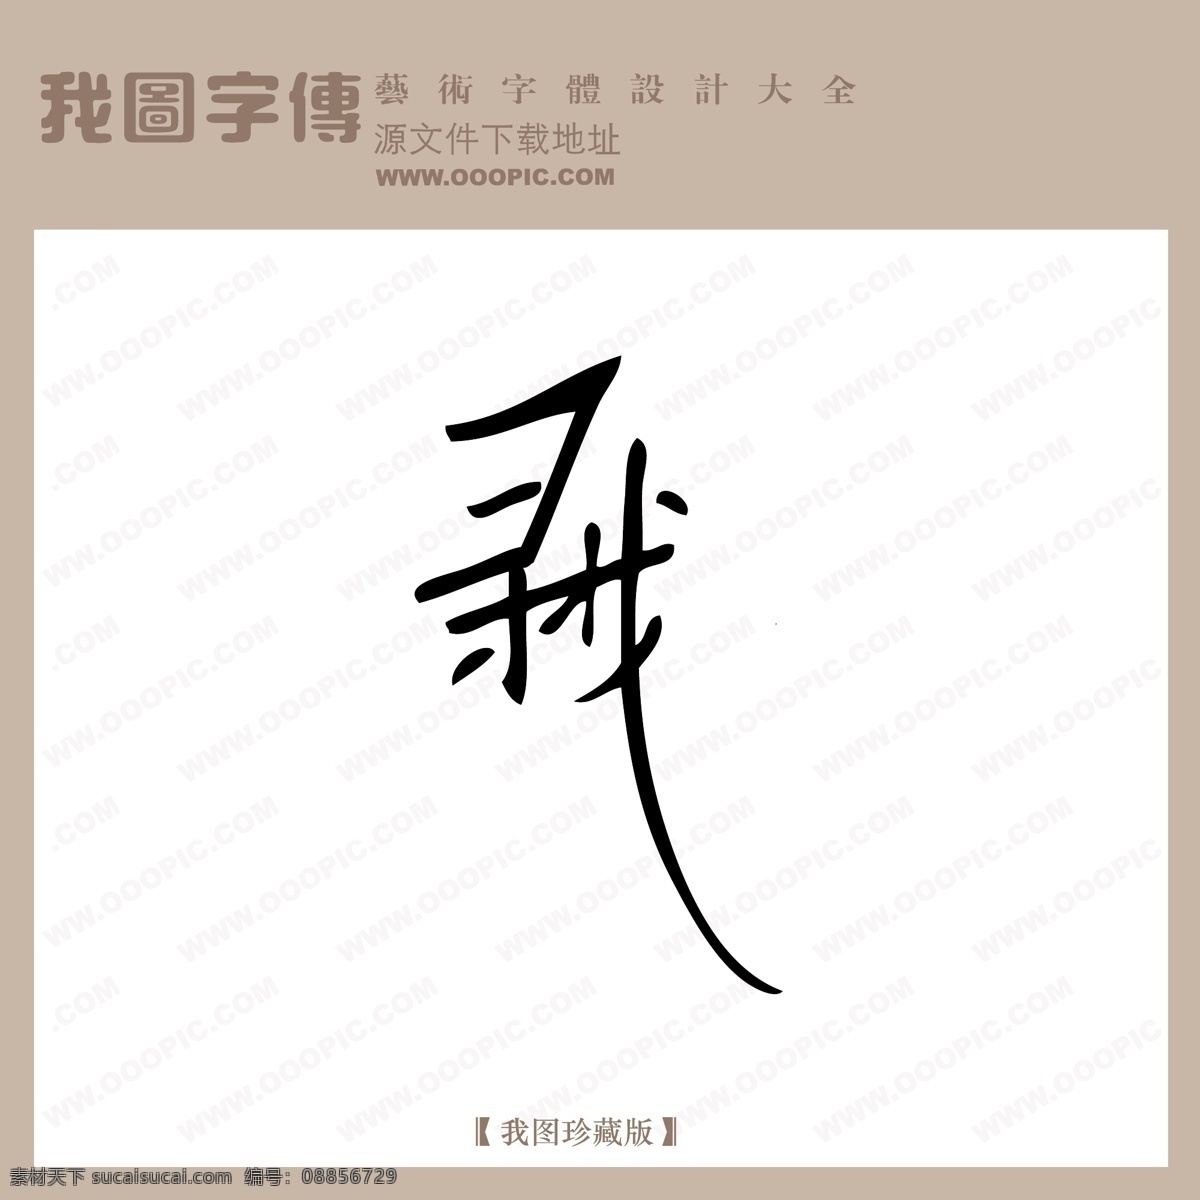 寻找 中文 现代艺术 字 创意 美工 艺术 中国字体下载 矢量图